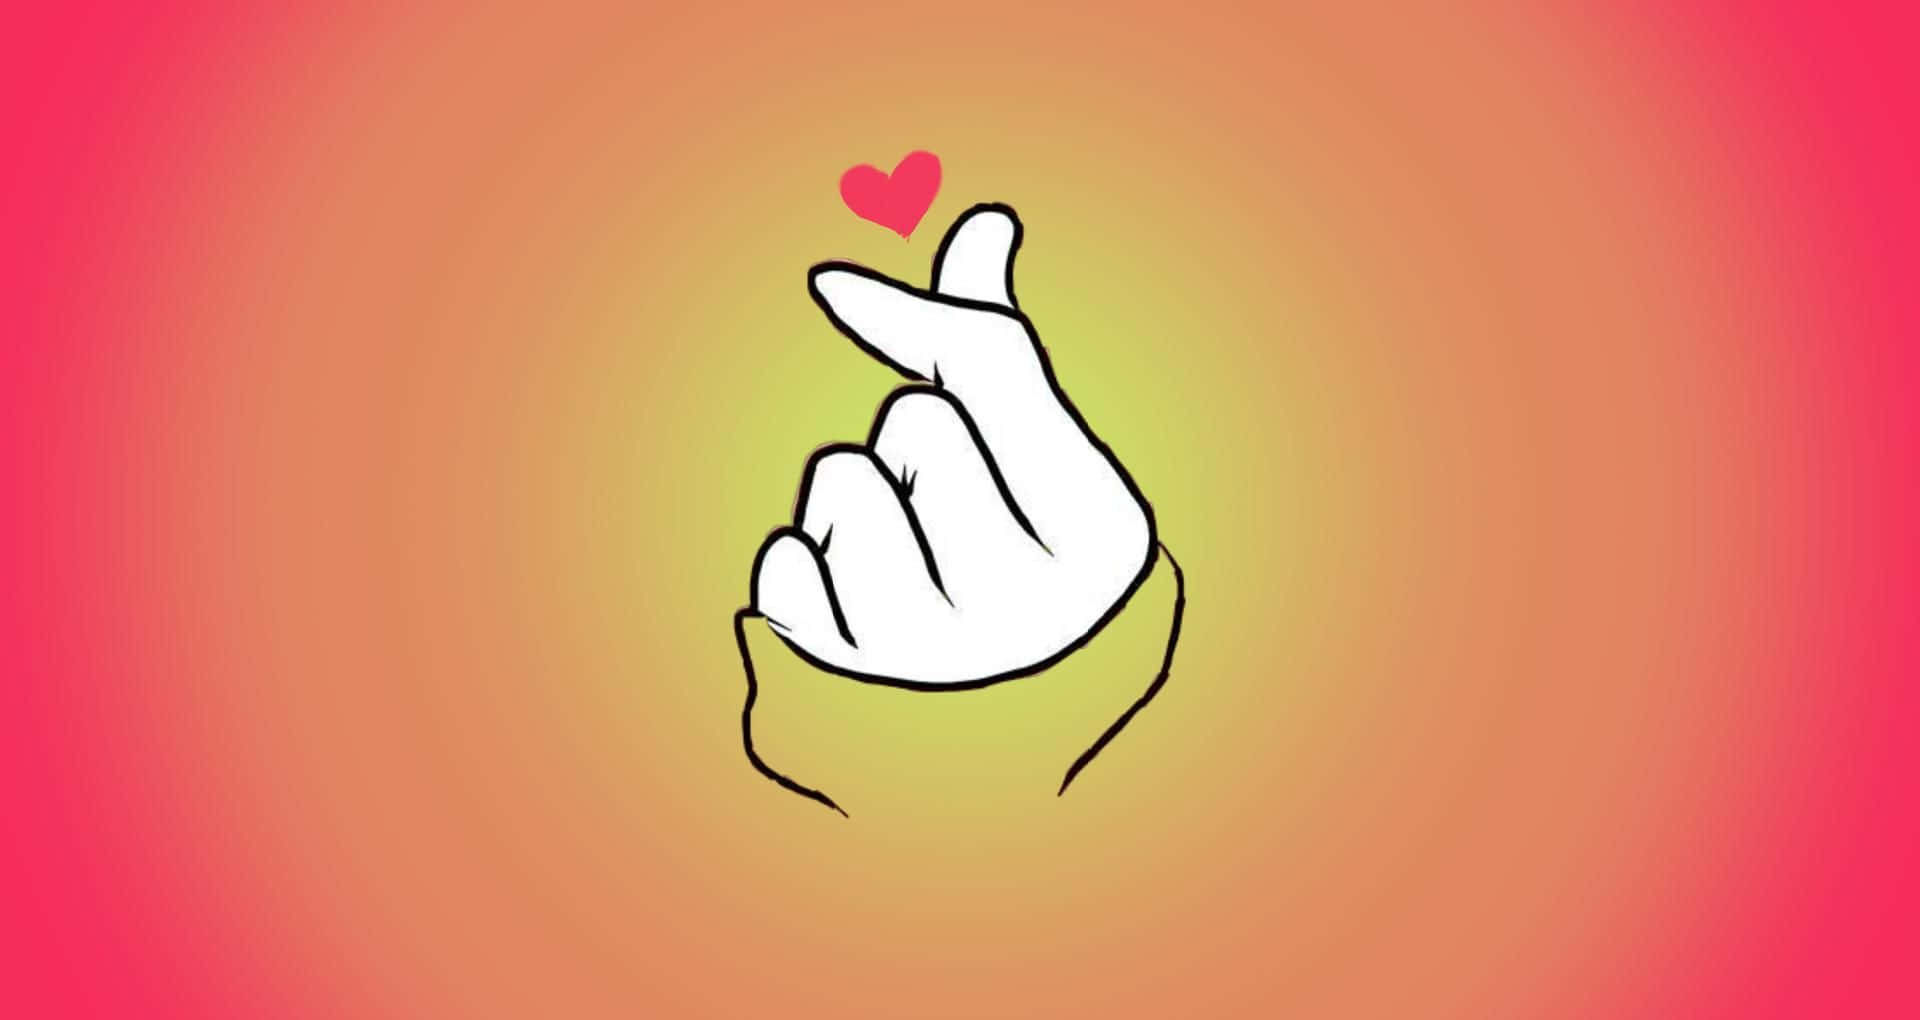 BTS Finger Heart Orange Aesthetic Wallpaper